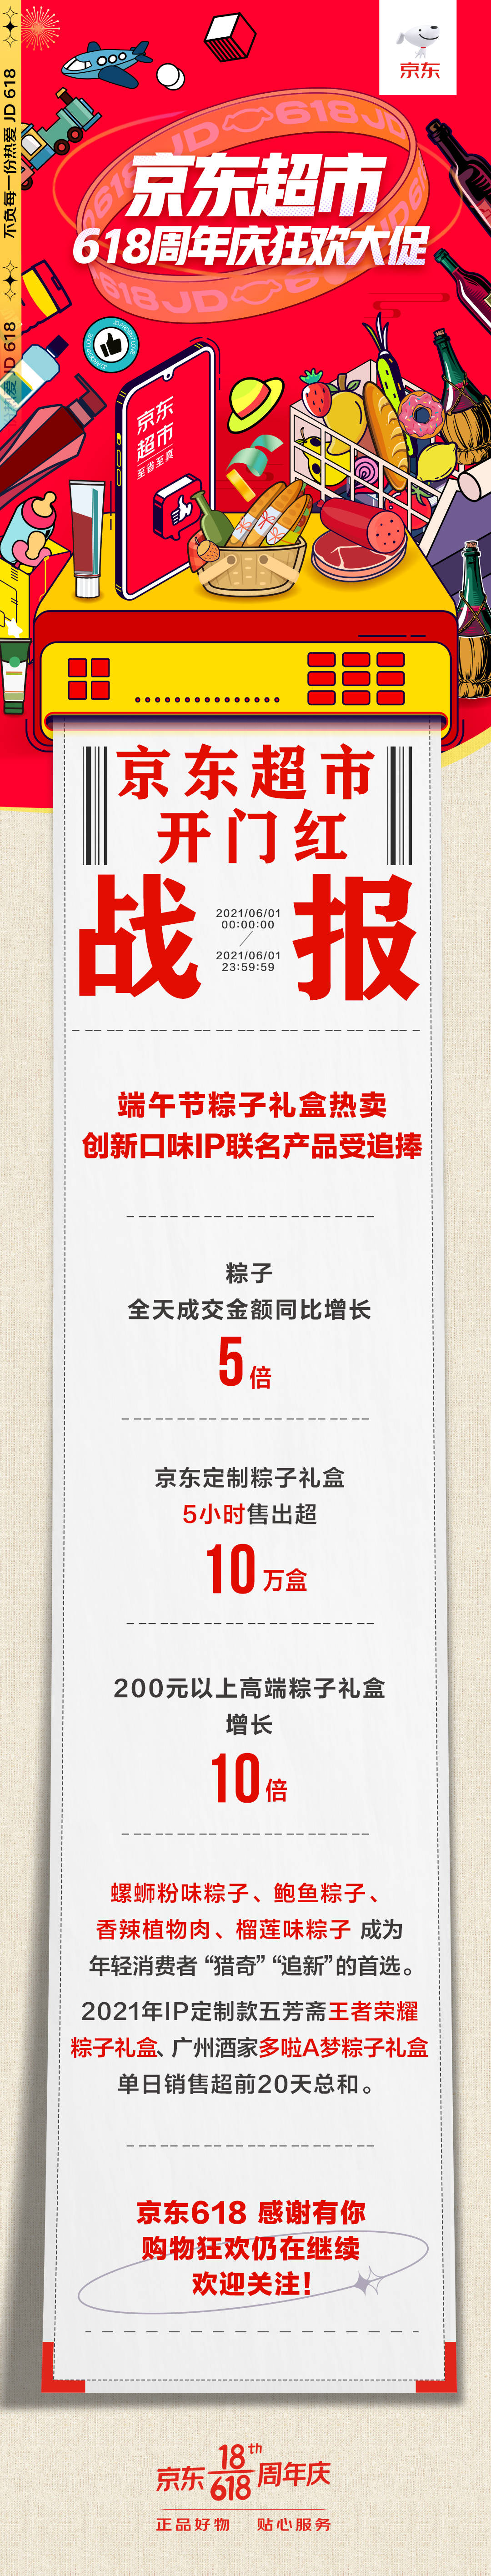 京东618开门红全日战报：儿童节、端午节加持 积木、粽子增长亮眼